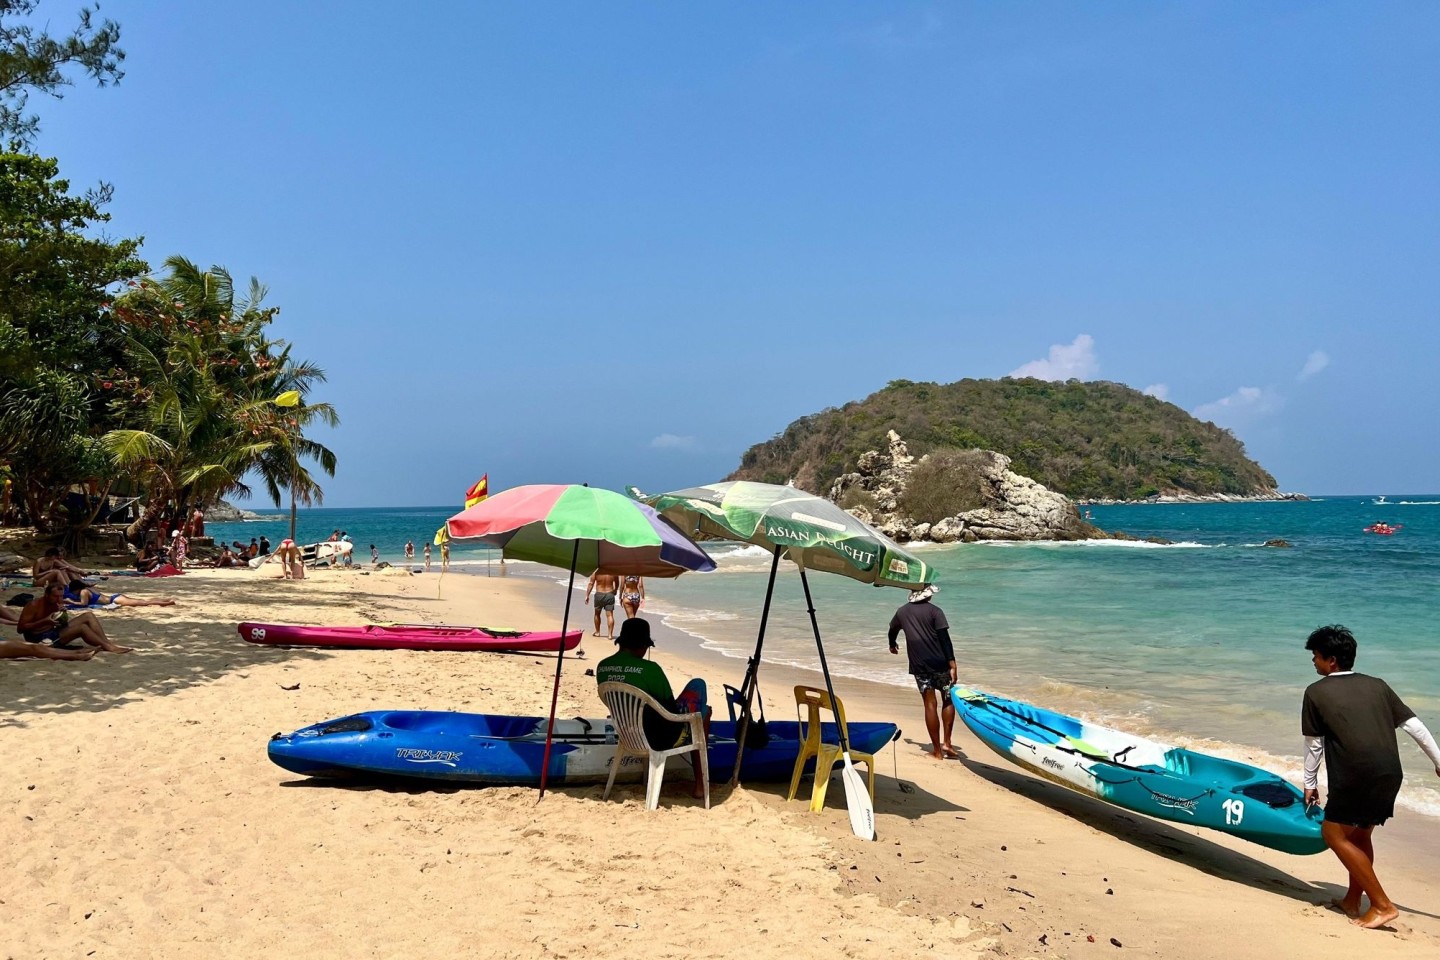 Trügerische Idylle am Strand von Phuket: Ein Mann schützt sich dort vor der brütend heißen Sonne. Seit Tagen leiden die Menschen in weiten Teilen Südostasiens unter ungewöhnlich star...